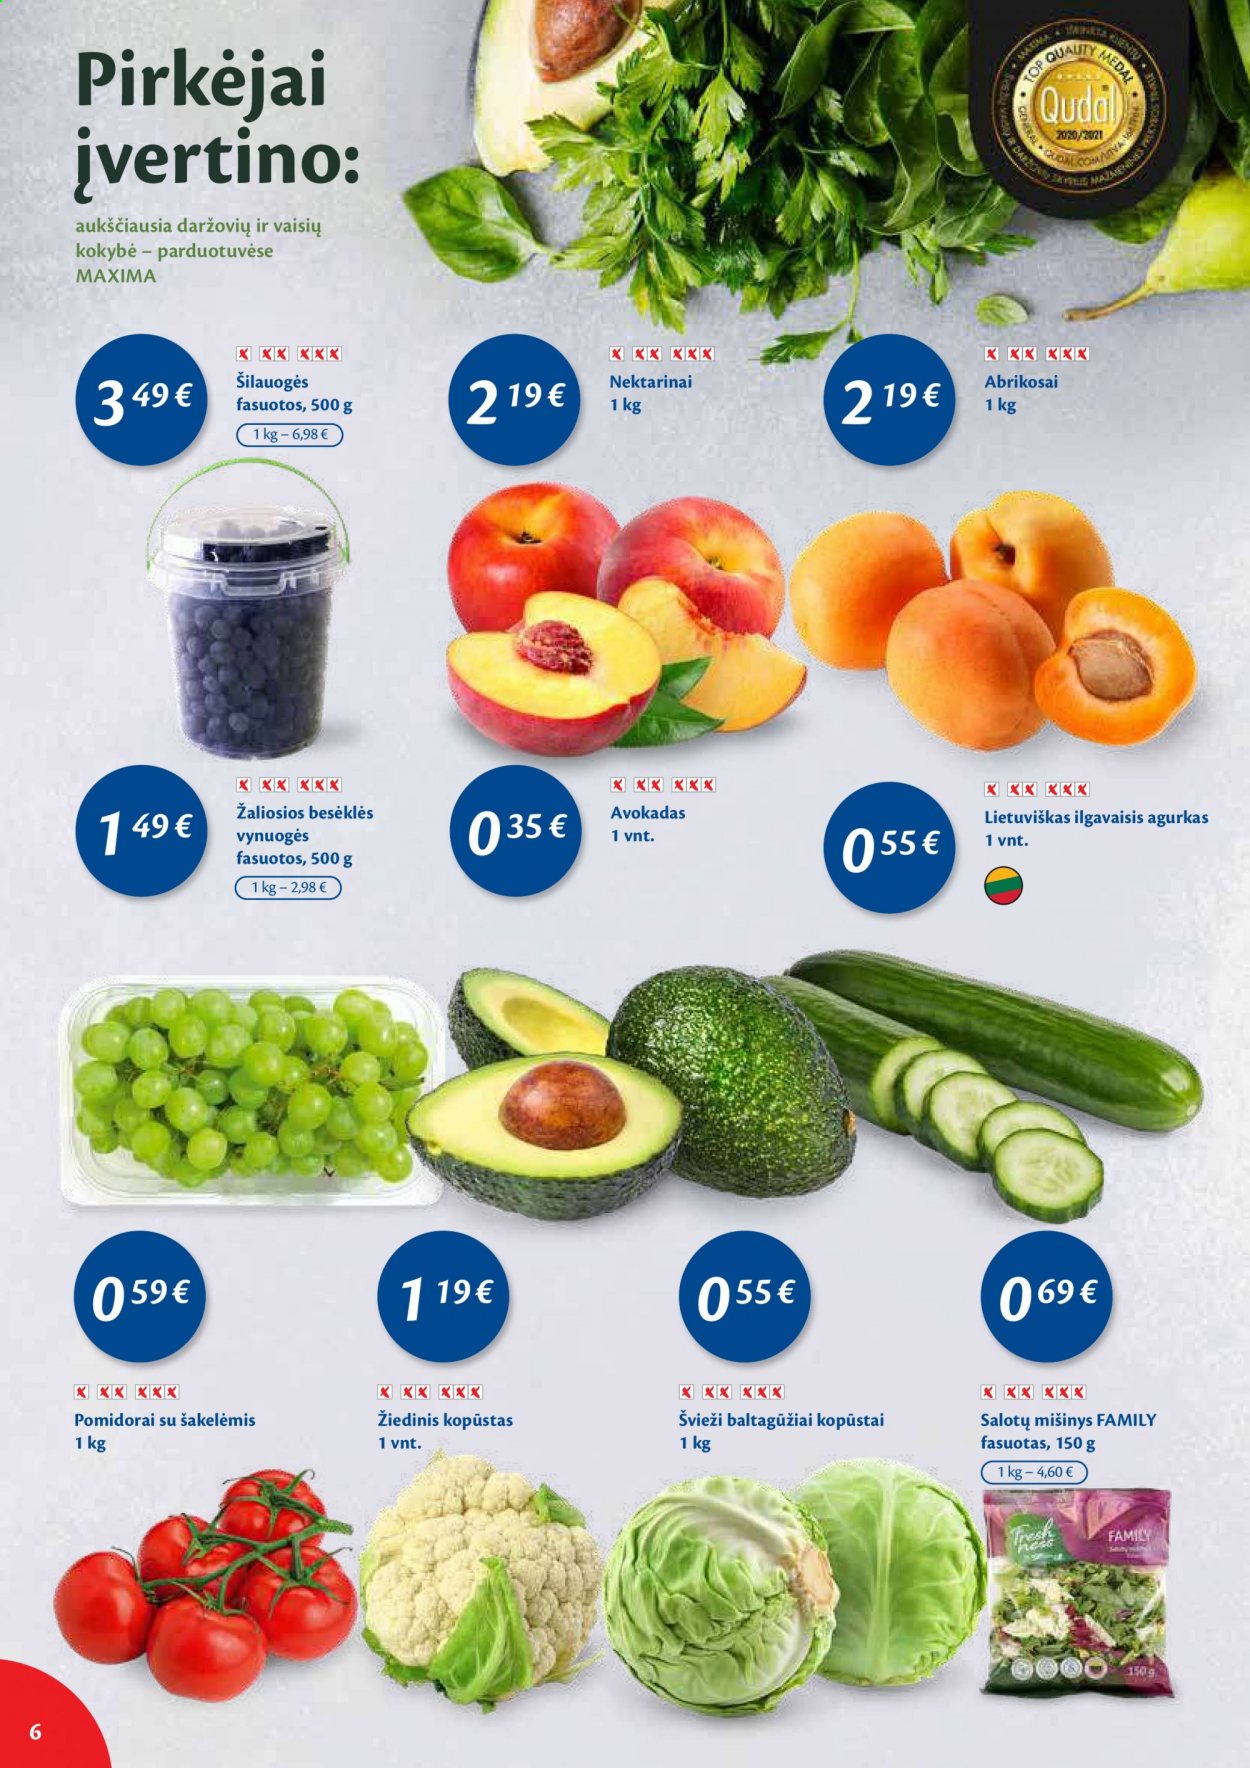 thumbnail - „Maxima“ leidinys - 2021 06 08 - 2021 06 14 - Išpardavimų produktai - agurkas, baltagūžiai kopūstai, kopūstai, pomidorai, avokadas, šilauogės, vynuogės, nektarinai. 6 puslapis.